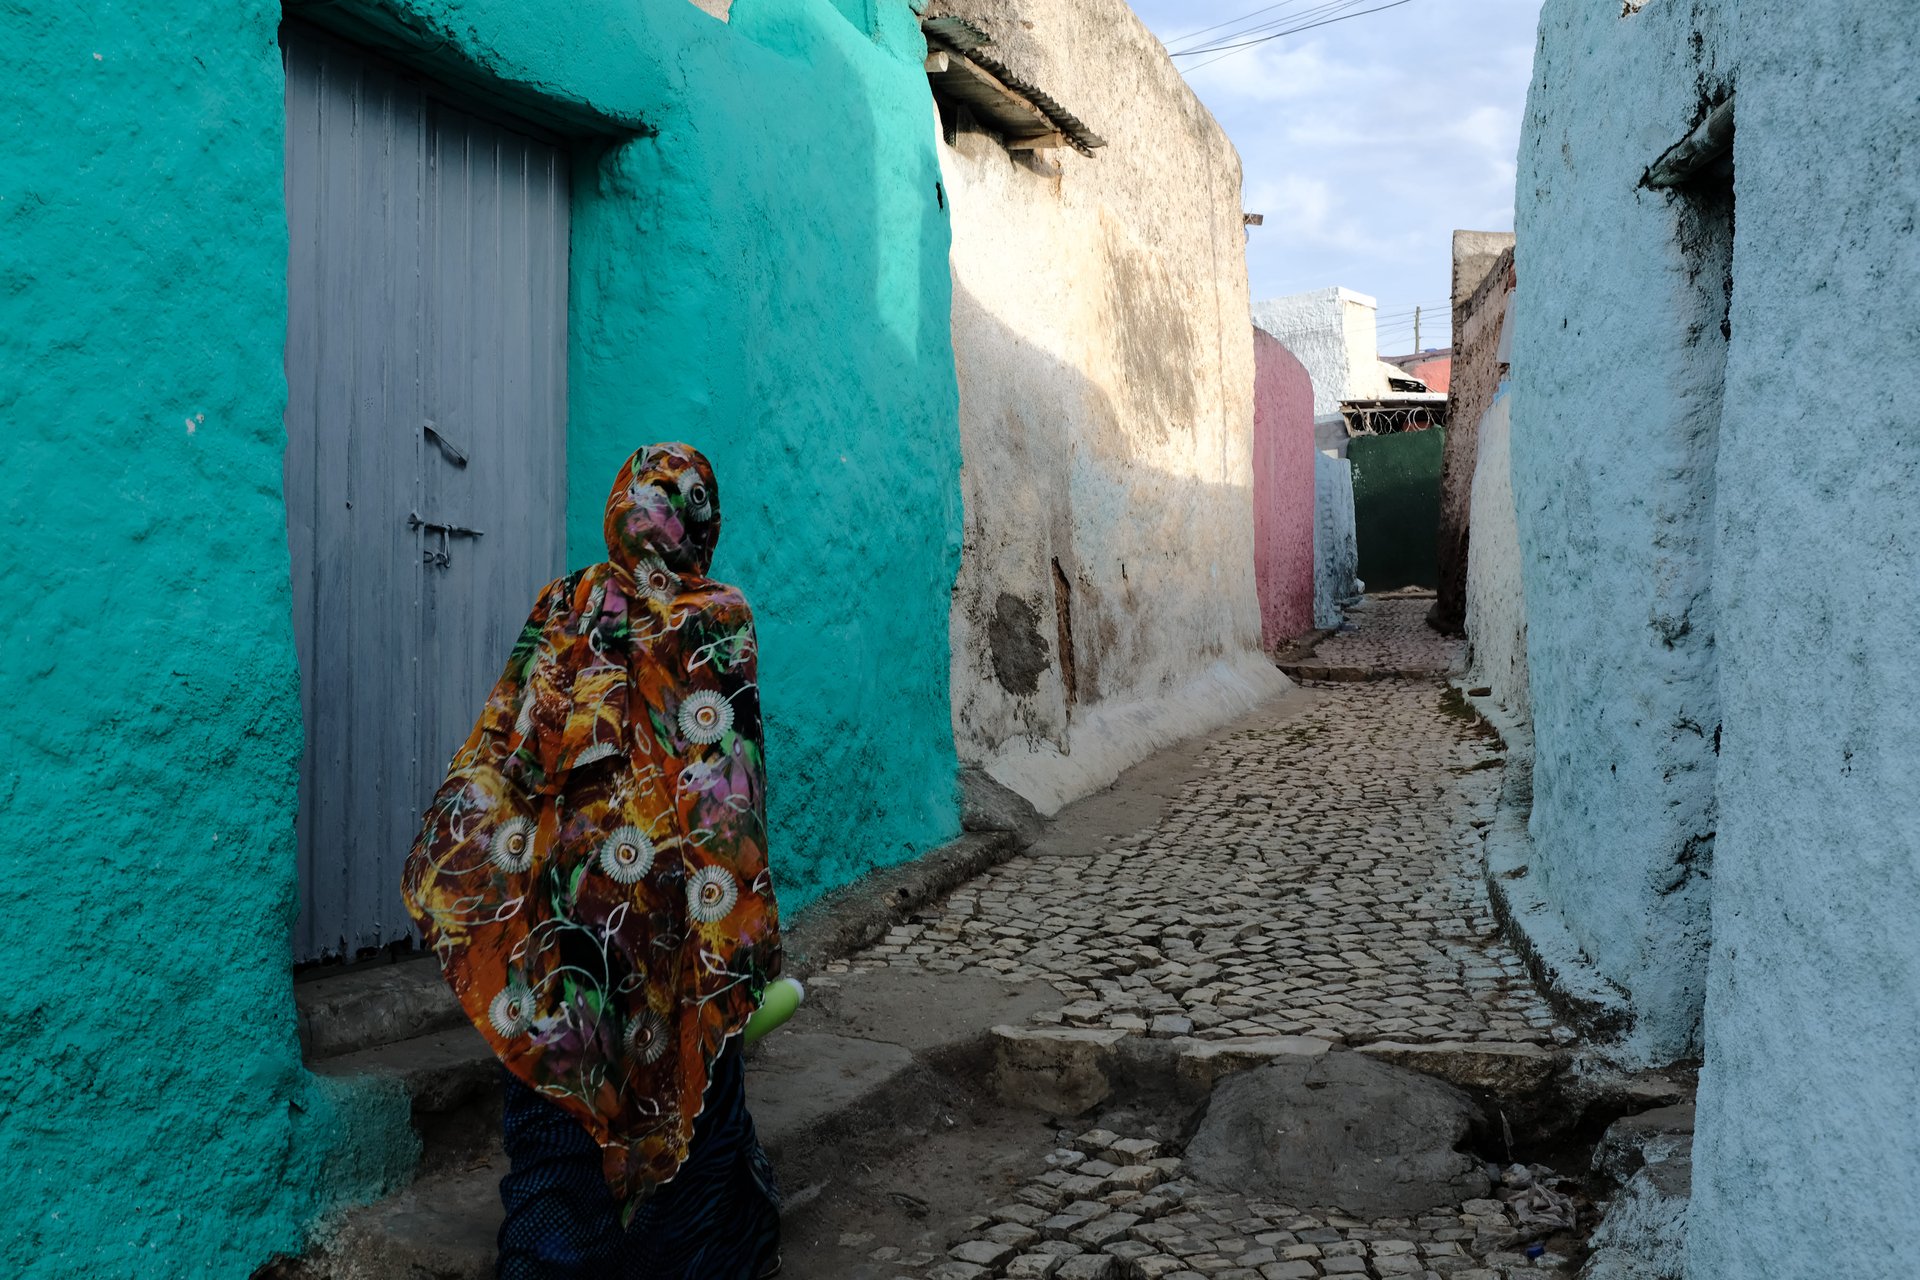 Femme marchant dans les rues colorés de Harar, Ethiopie